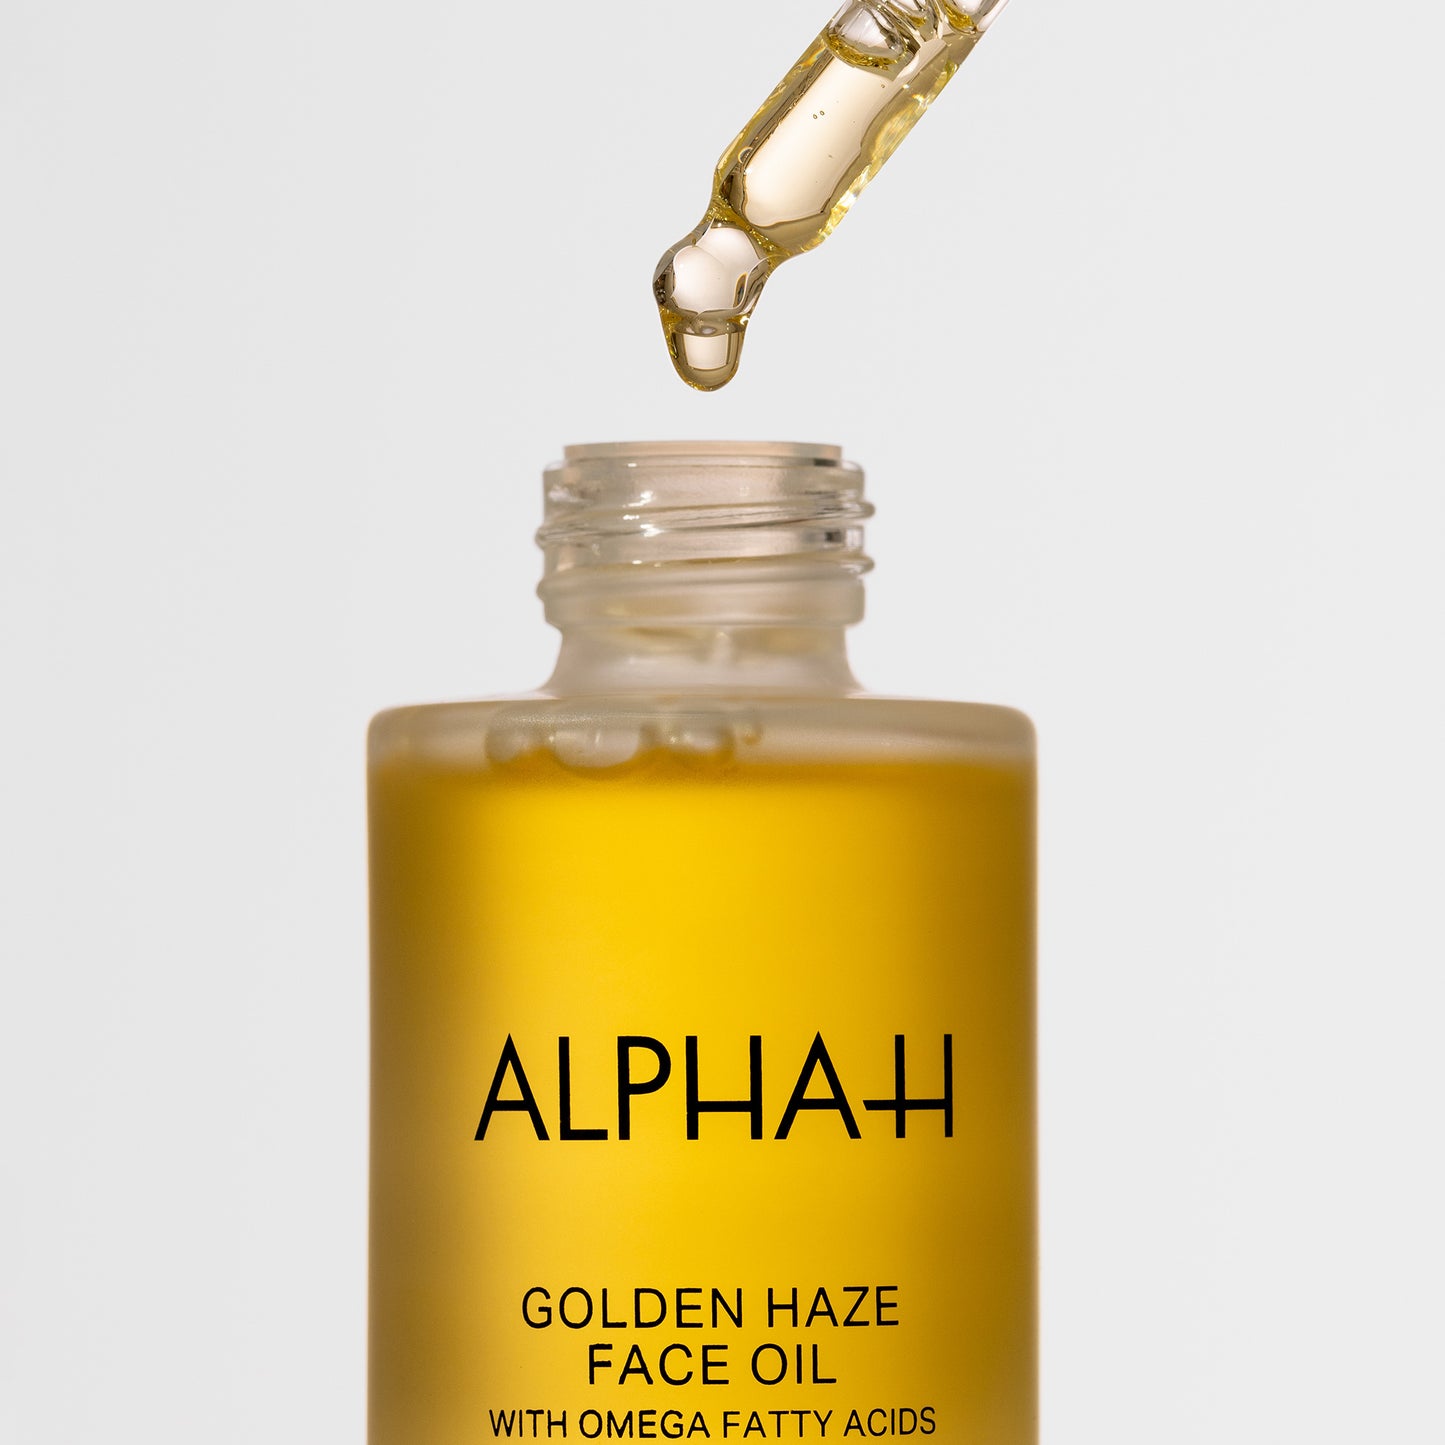 Golden Haze Face Oil